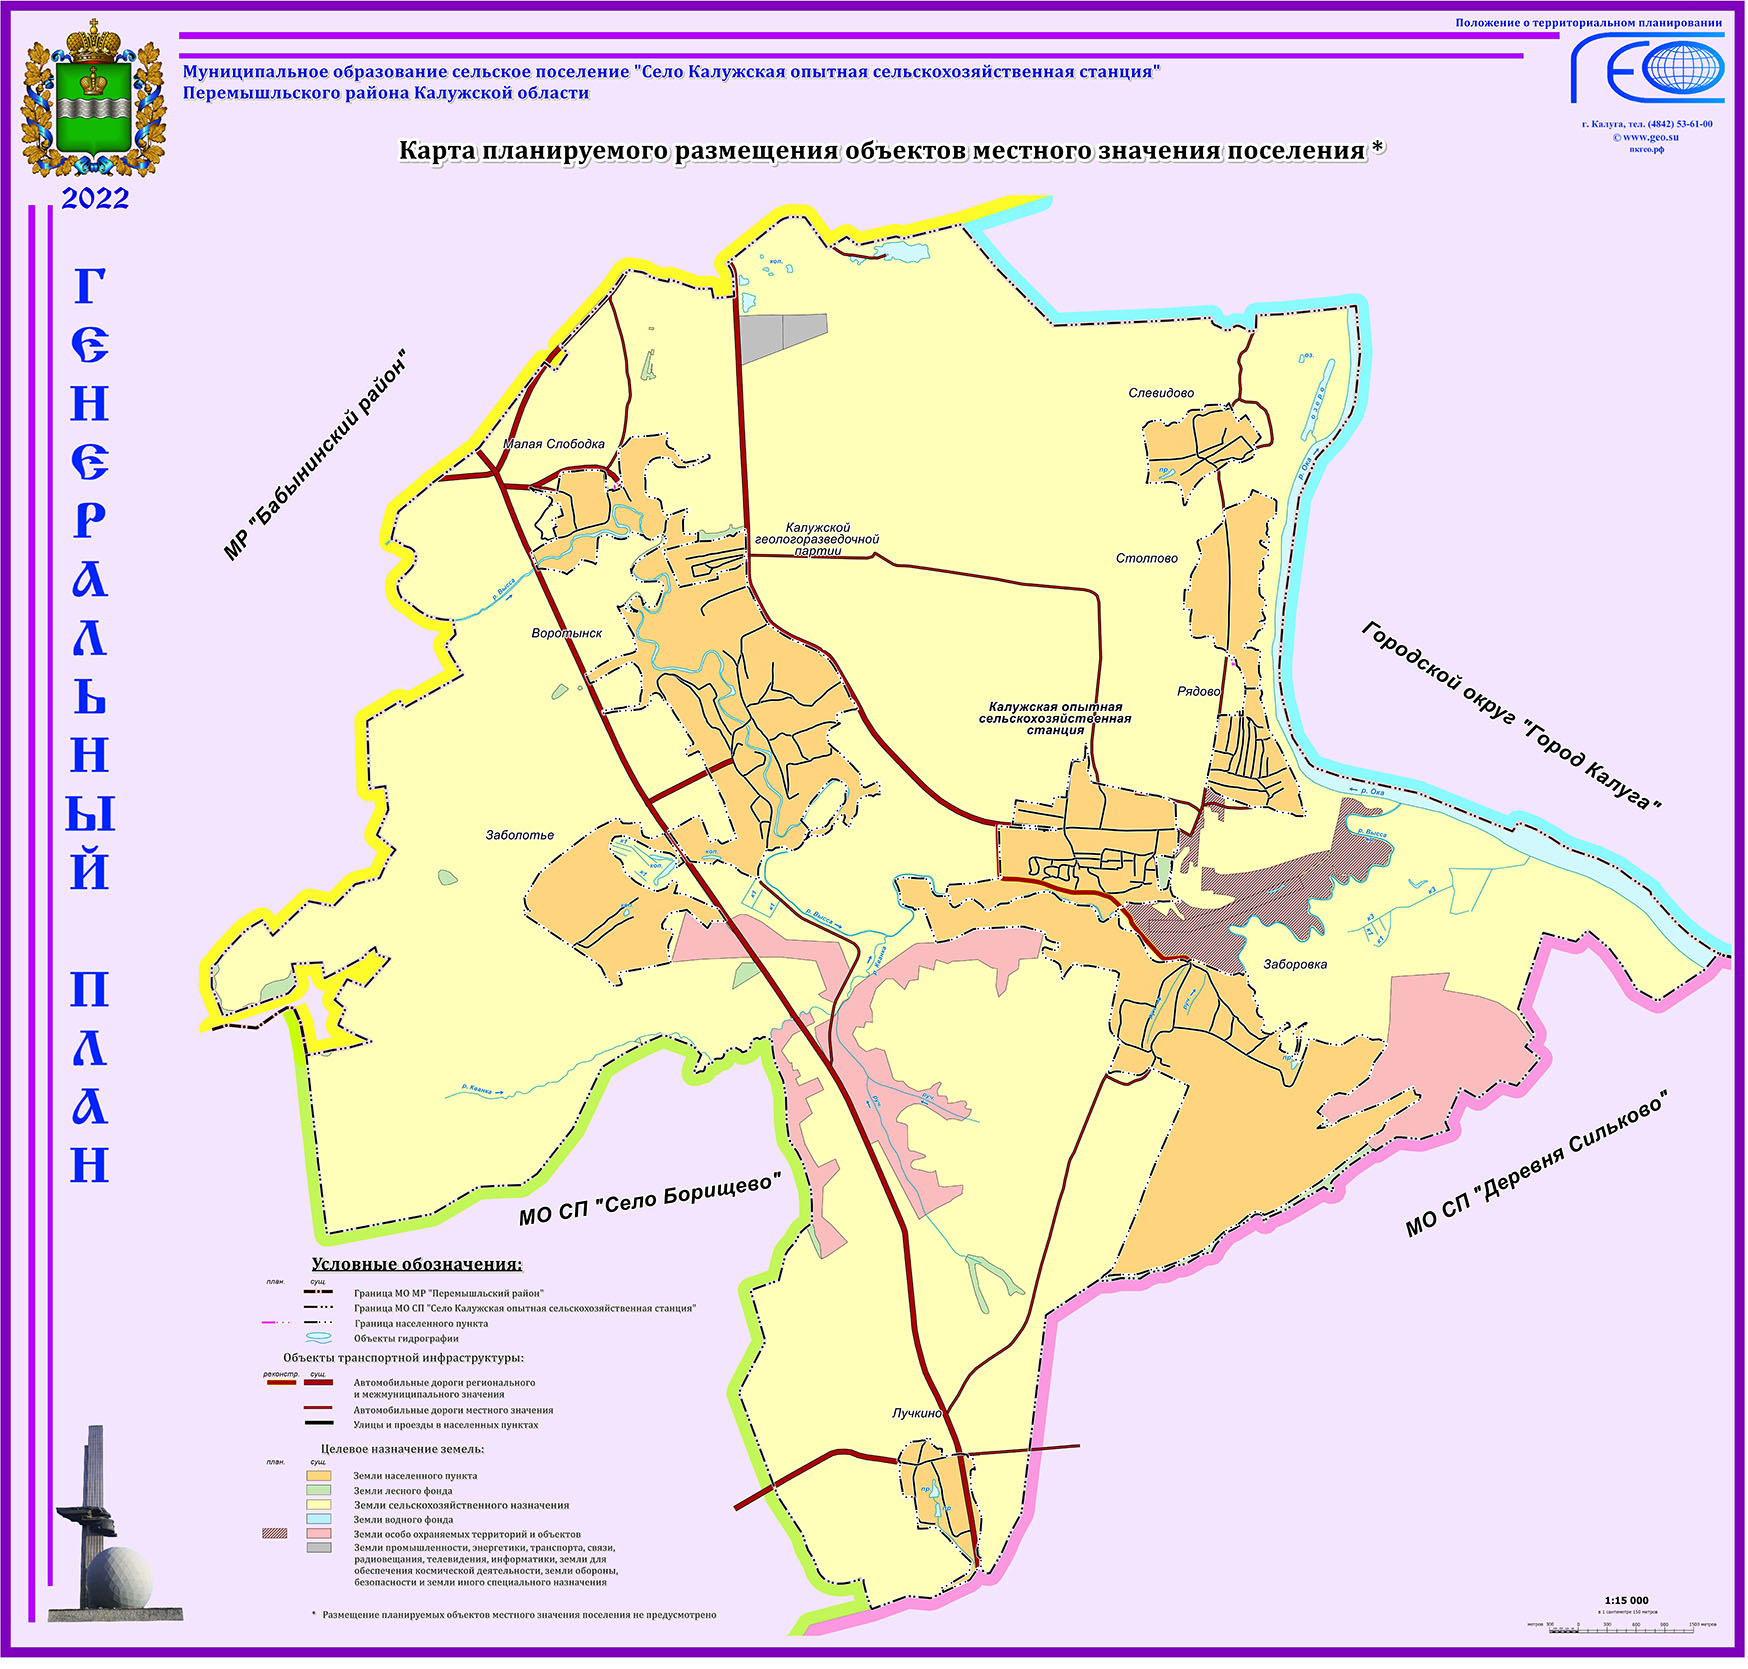 Карта планируемого размещения объектов местного значения поселения.